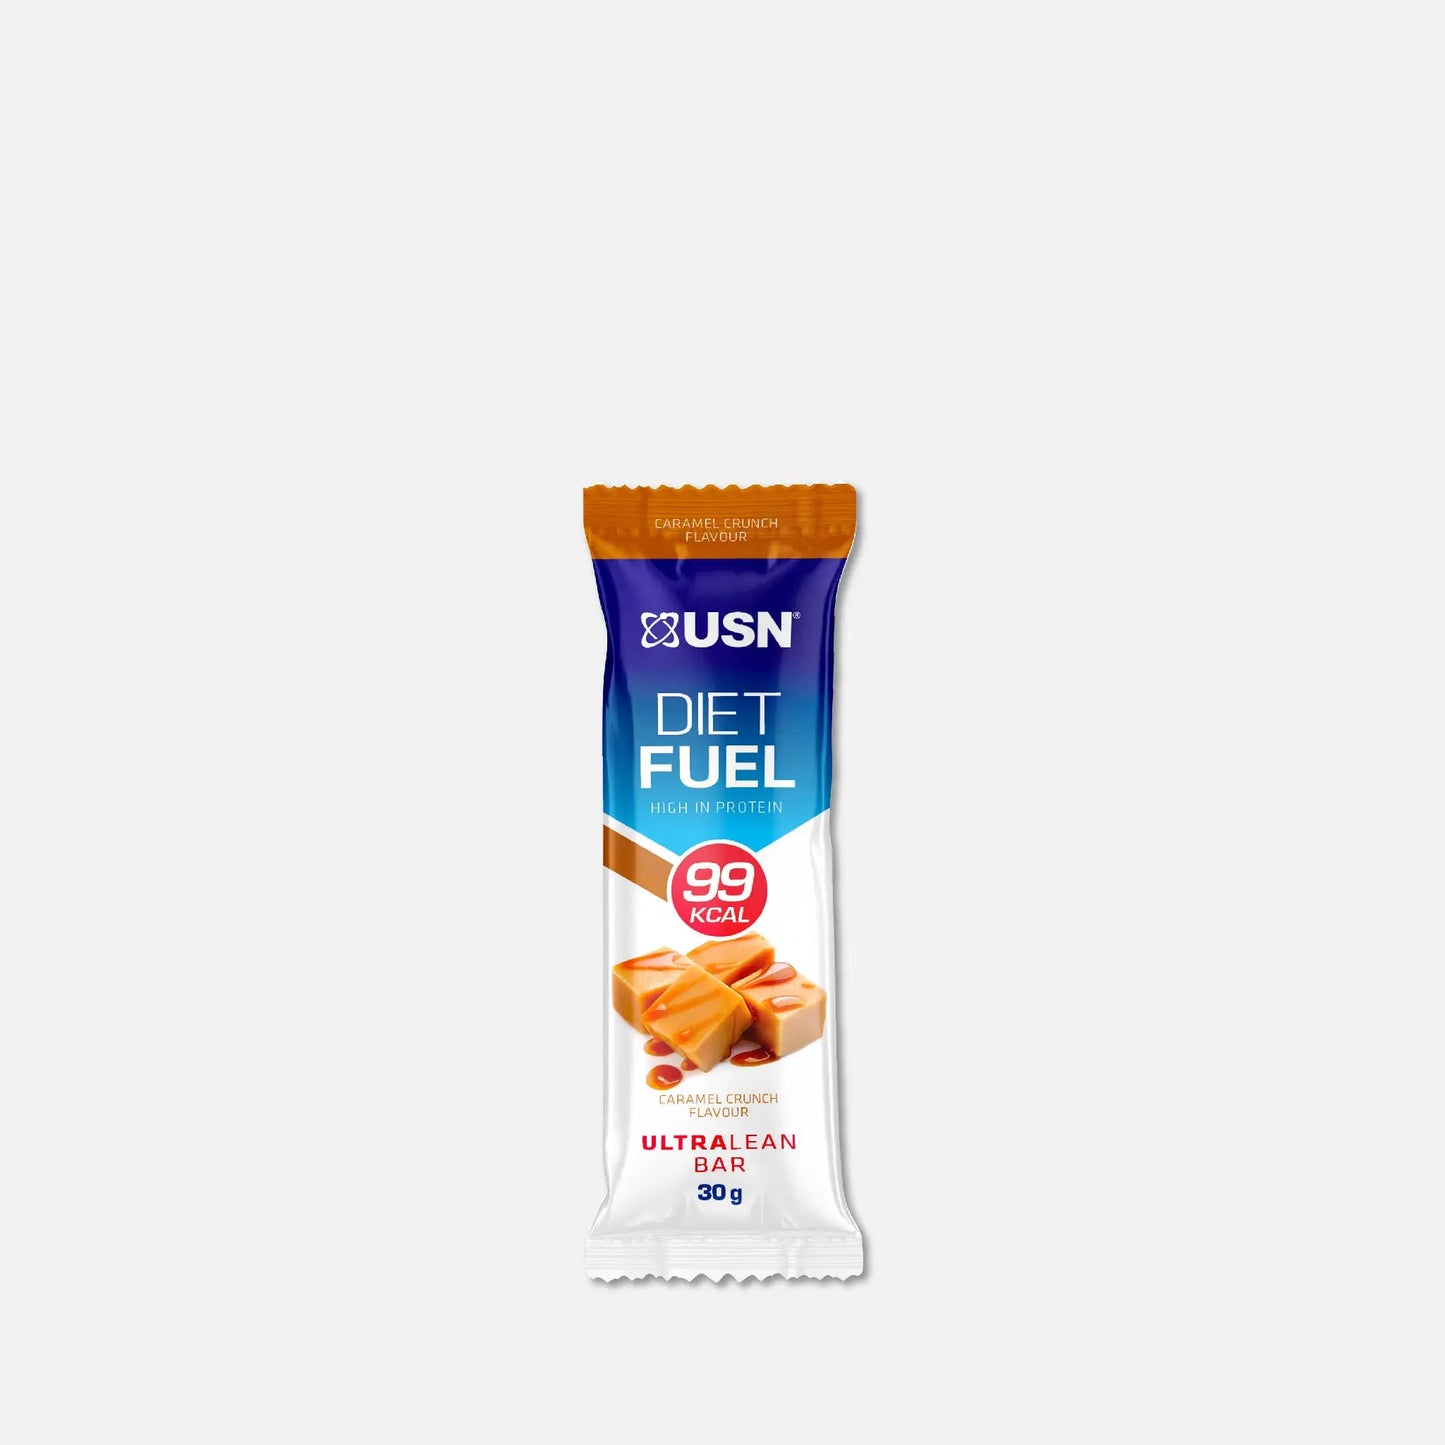 USN-Diet-Fuel-99kcal-bar-caramelcrunch-bar